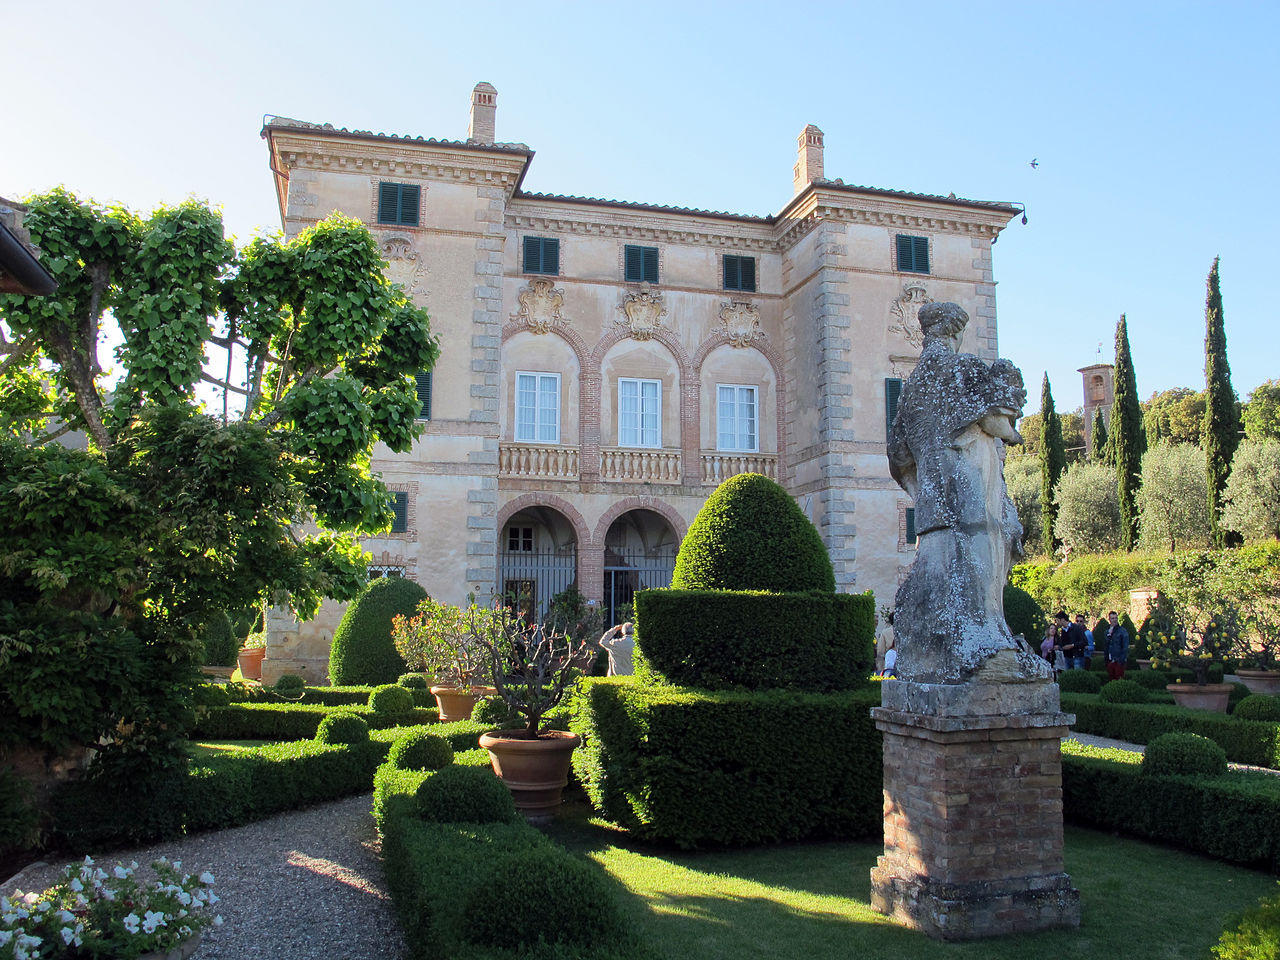 Villa di Cetinale gardens